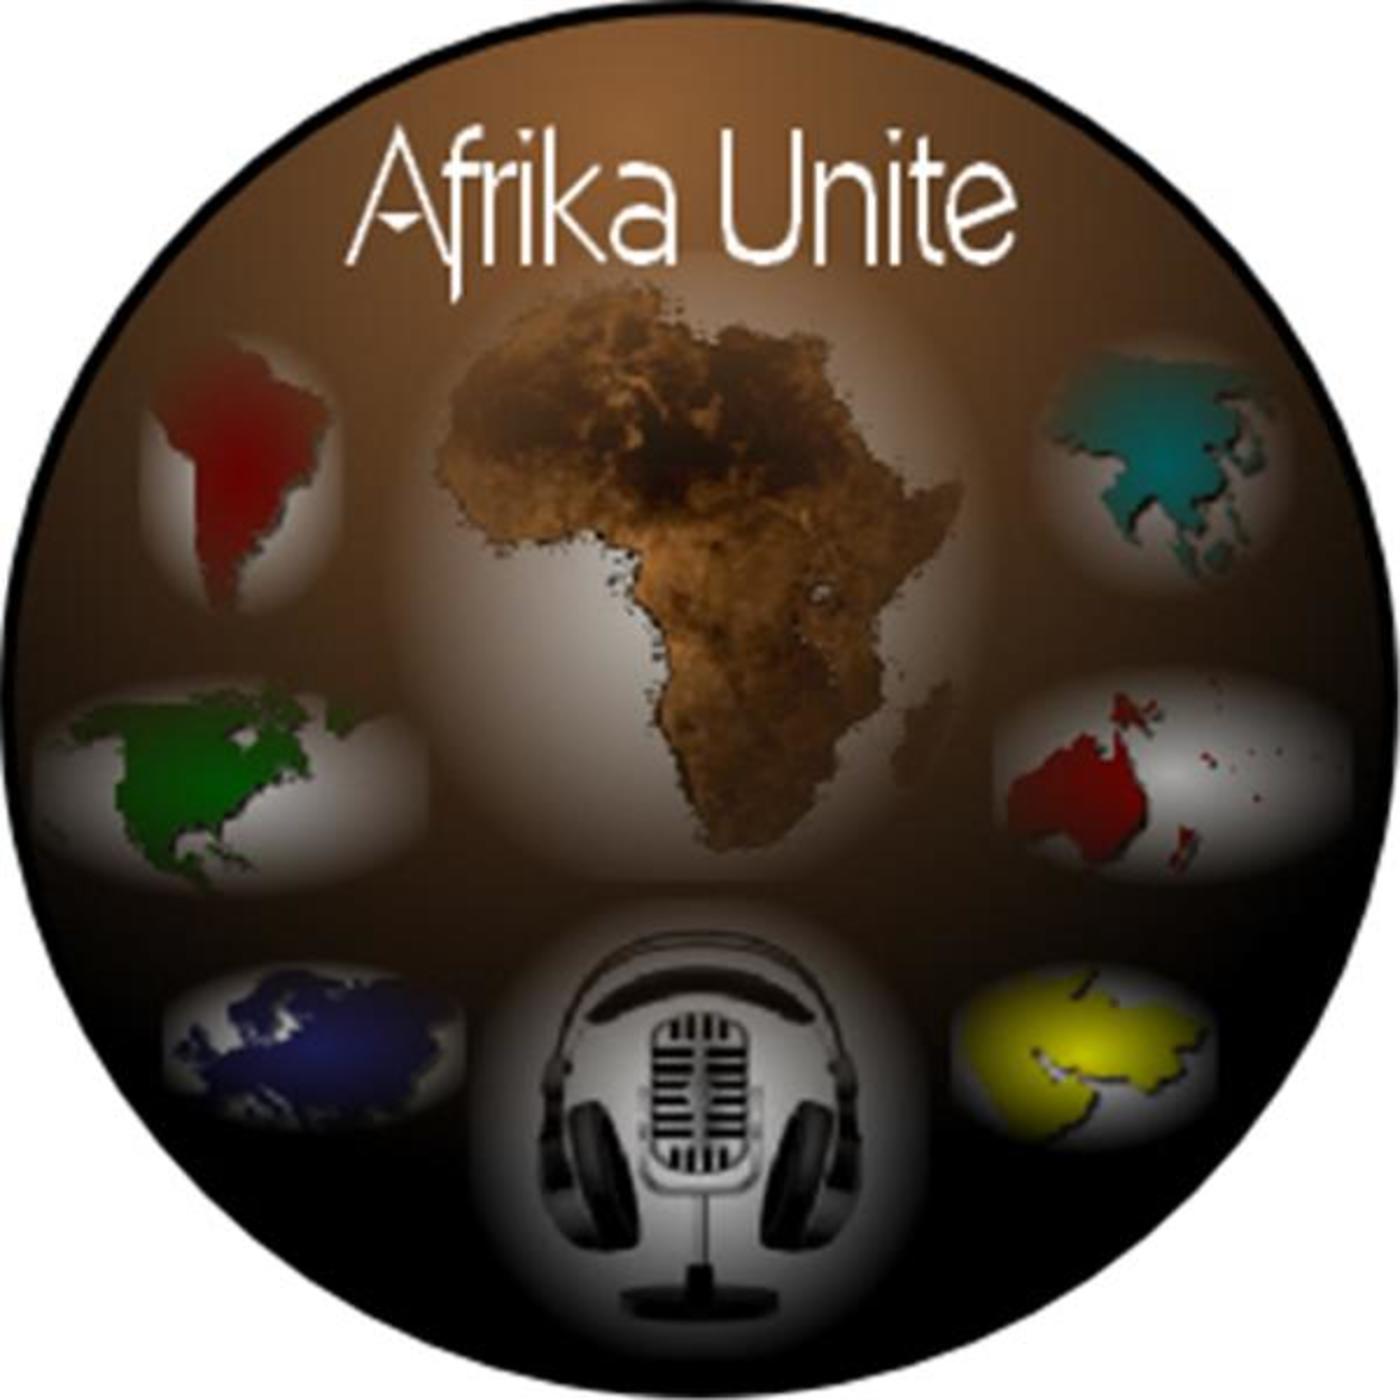 Afrika Unite